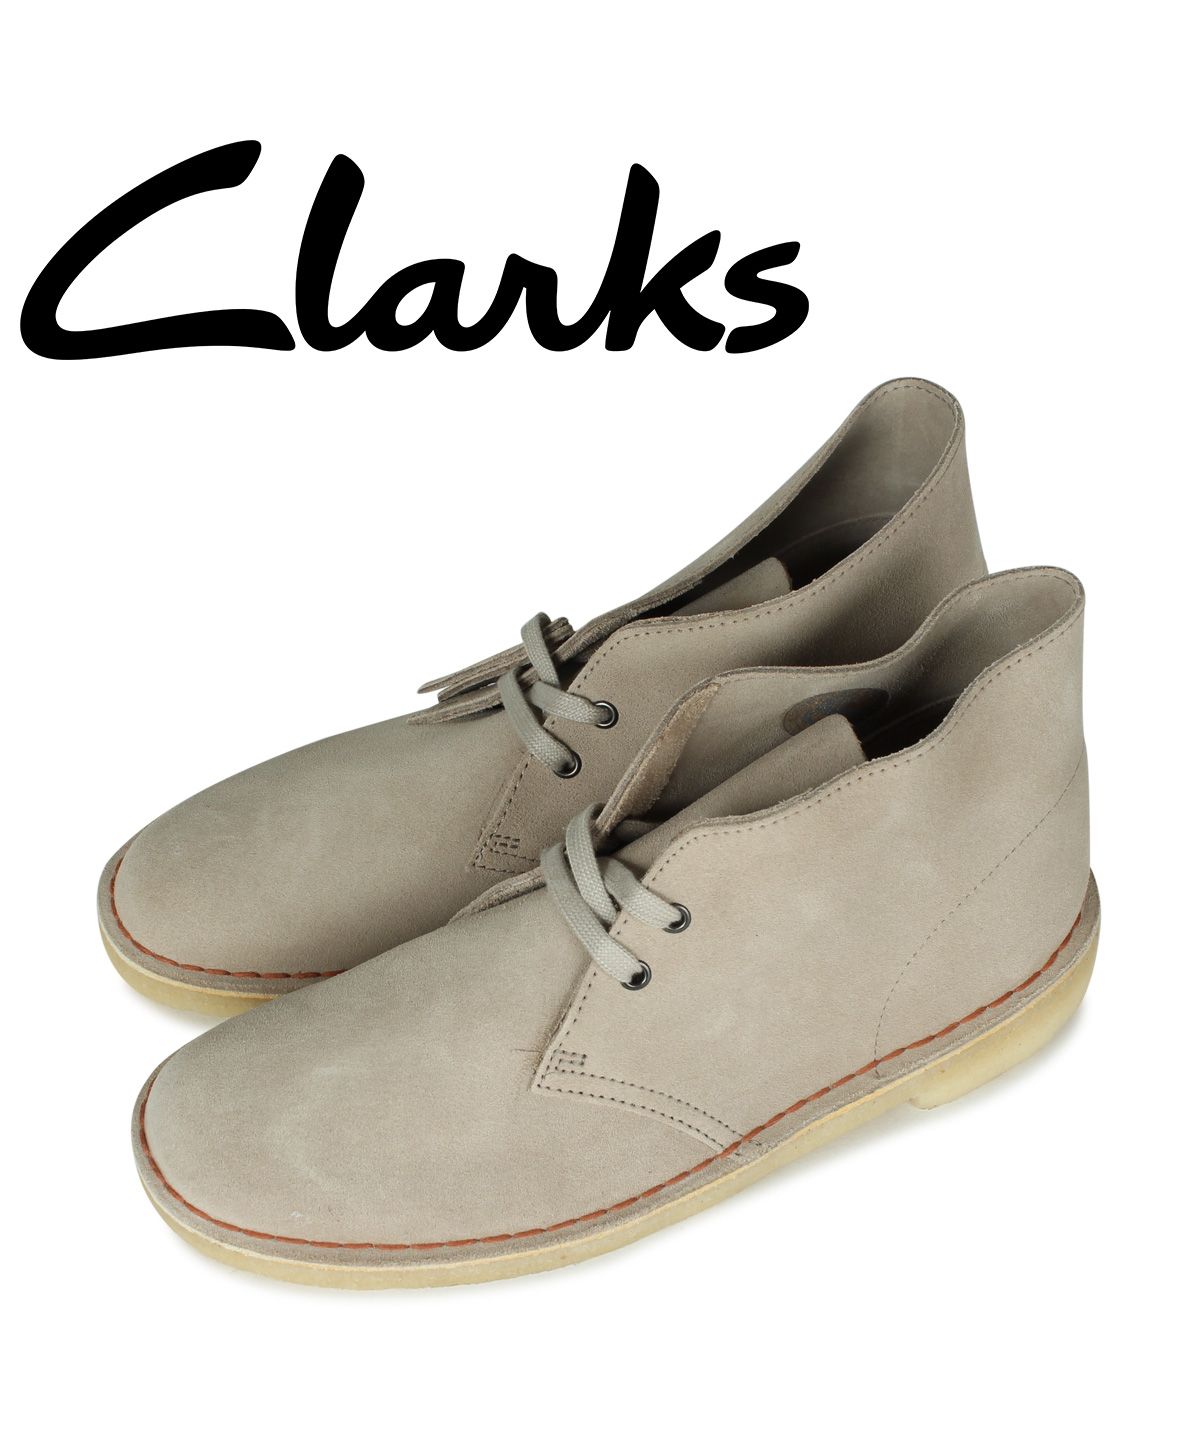 クラークス デザートブーツ メンズ - その他のメンズ靴の人気商品 